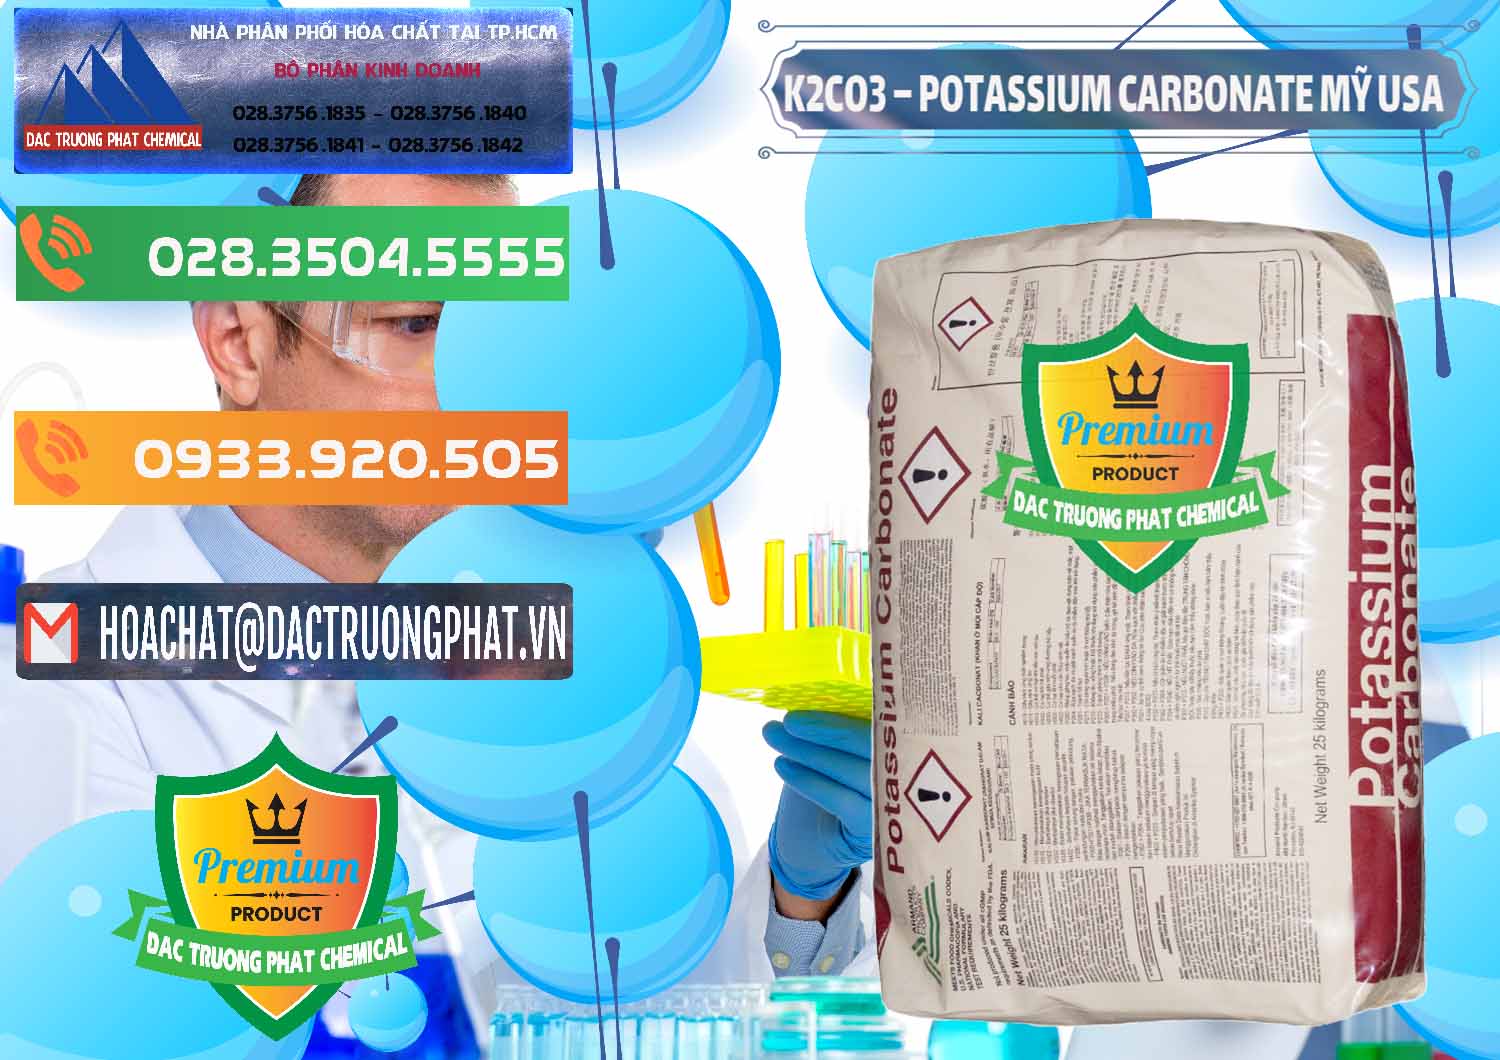 Nơi chuyên bán & cung cấp K2Co3 – Potassium Carbonate Mỹ USA - 0082 - Công ty chuyên bán _ phân phối hóa chất tại TP.HCM - hoachatxulynuoc.com.vn